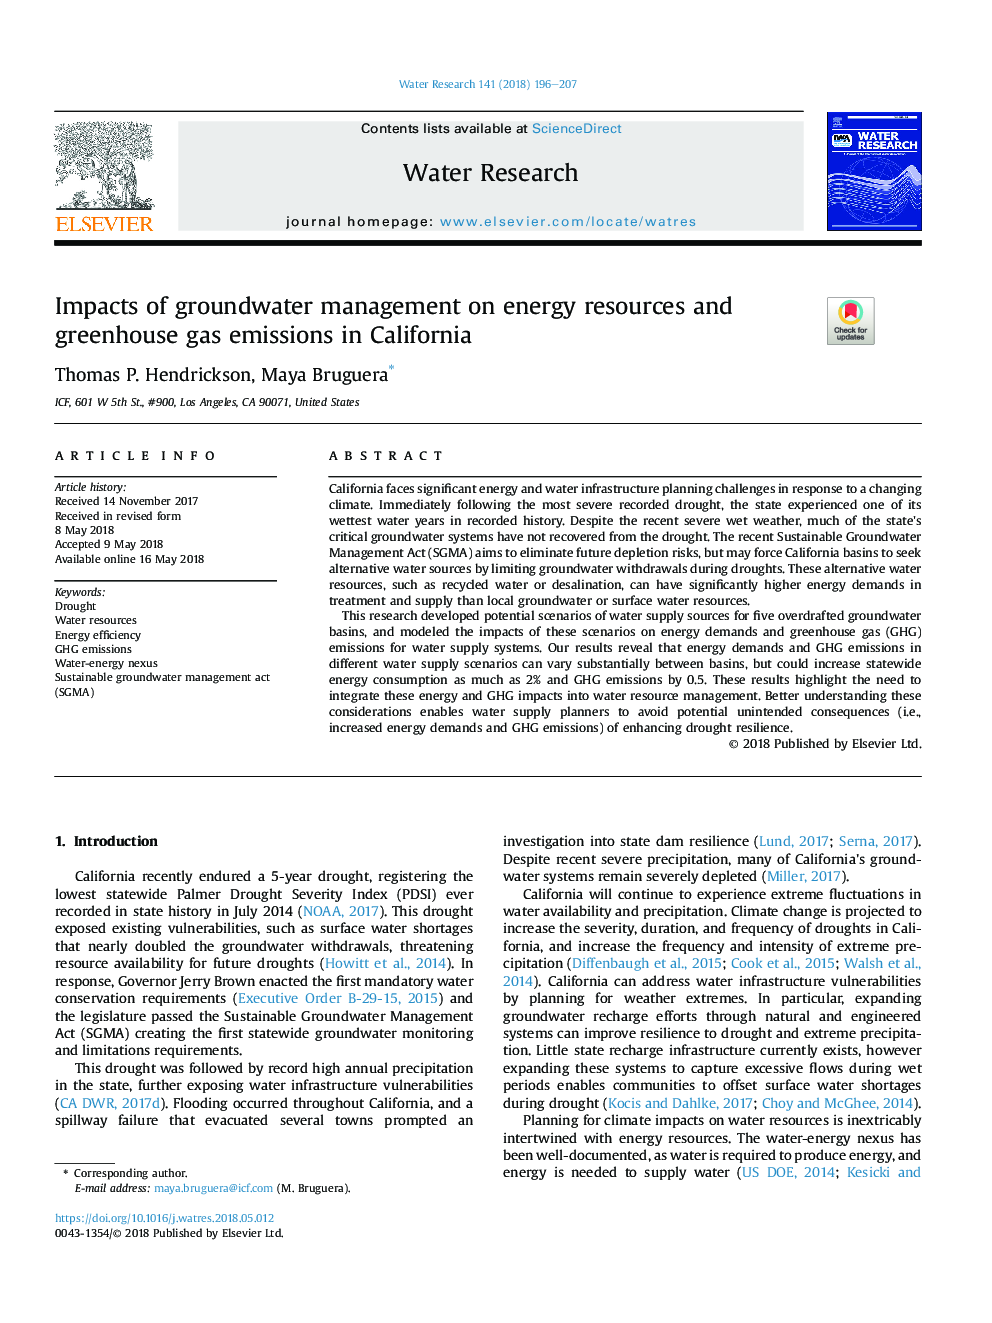 اثرات مدیریت آبهای زیرزمینی بر منابع انرژی و انتشار گازهای گلخانه ای در 